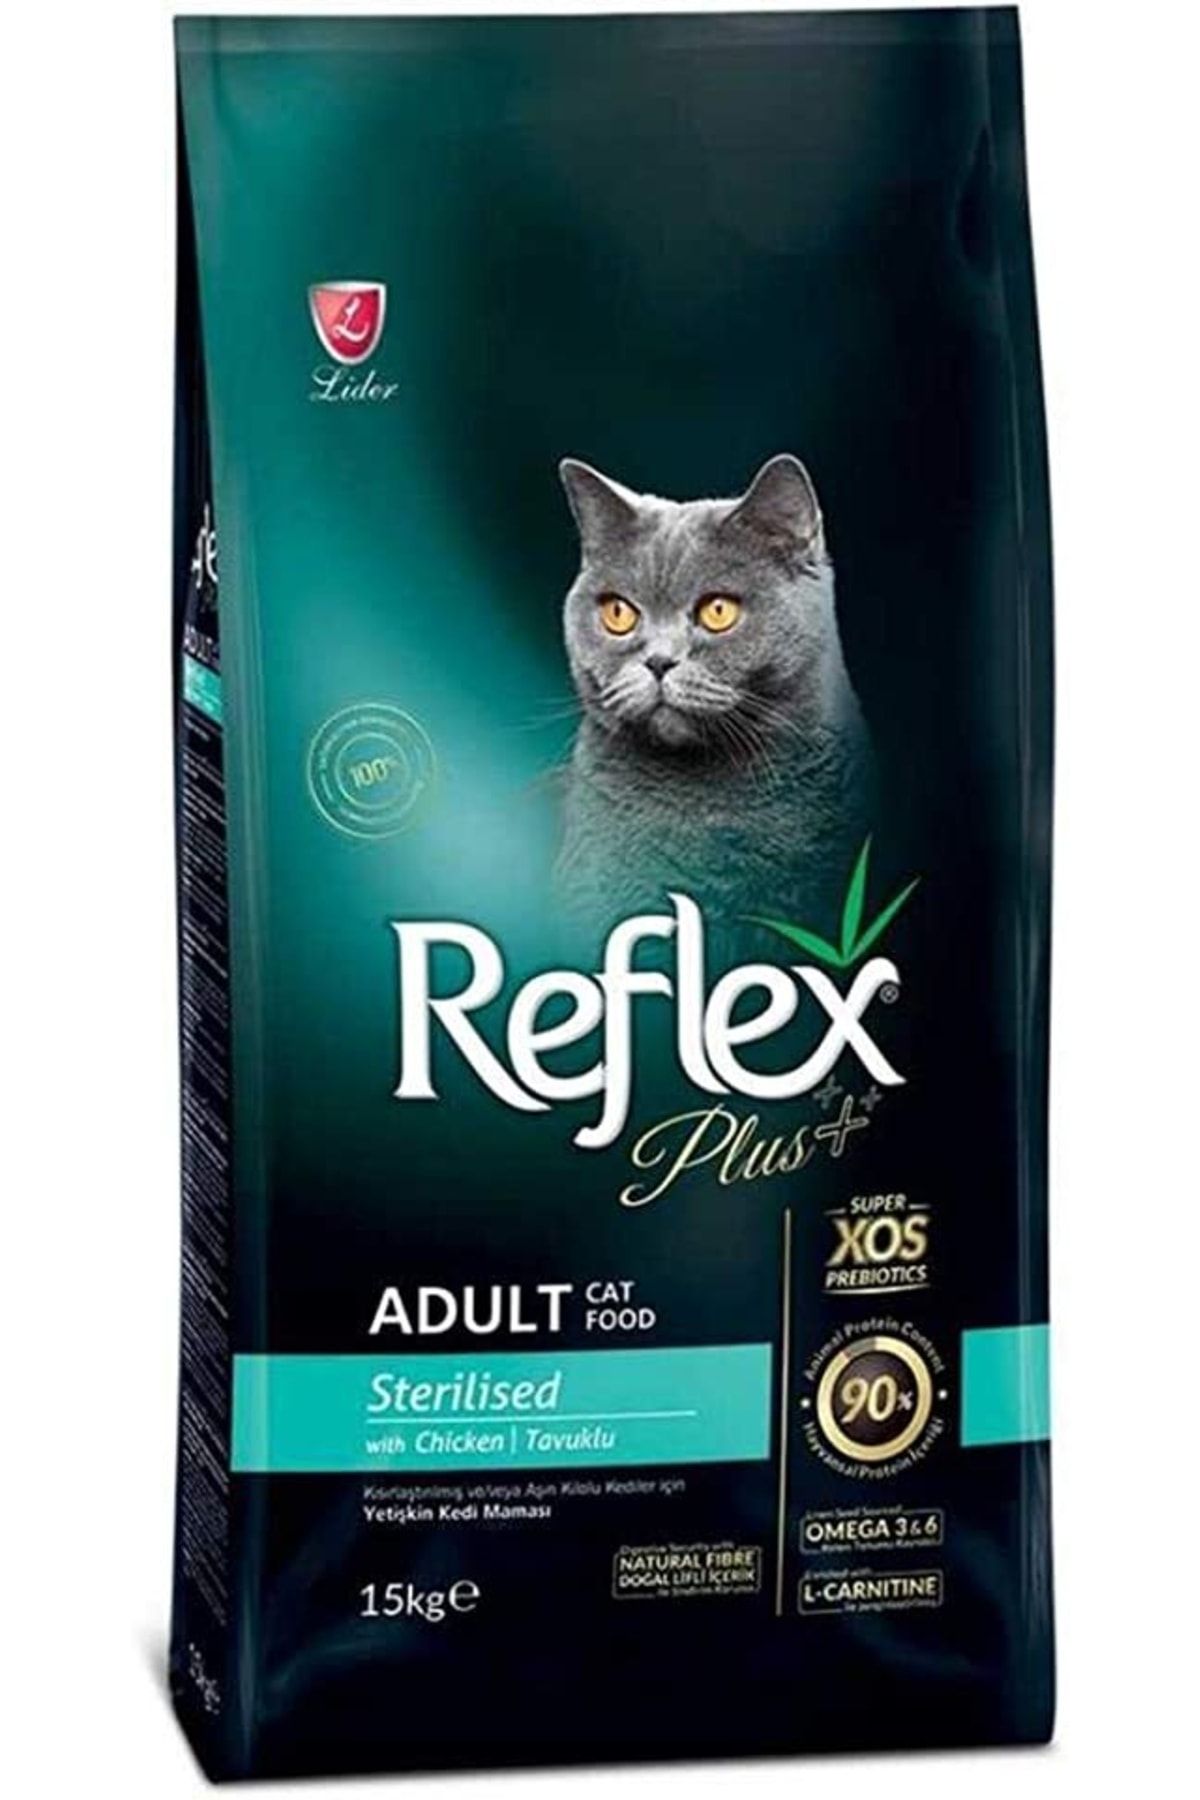 HECTOR EMPORİUM Reflex Plus Kısırlaştırılmış Yetişkin Kediler Için Tavuk Etli Kedi Maması, 1,5 Kg